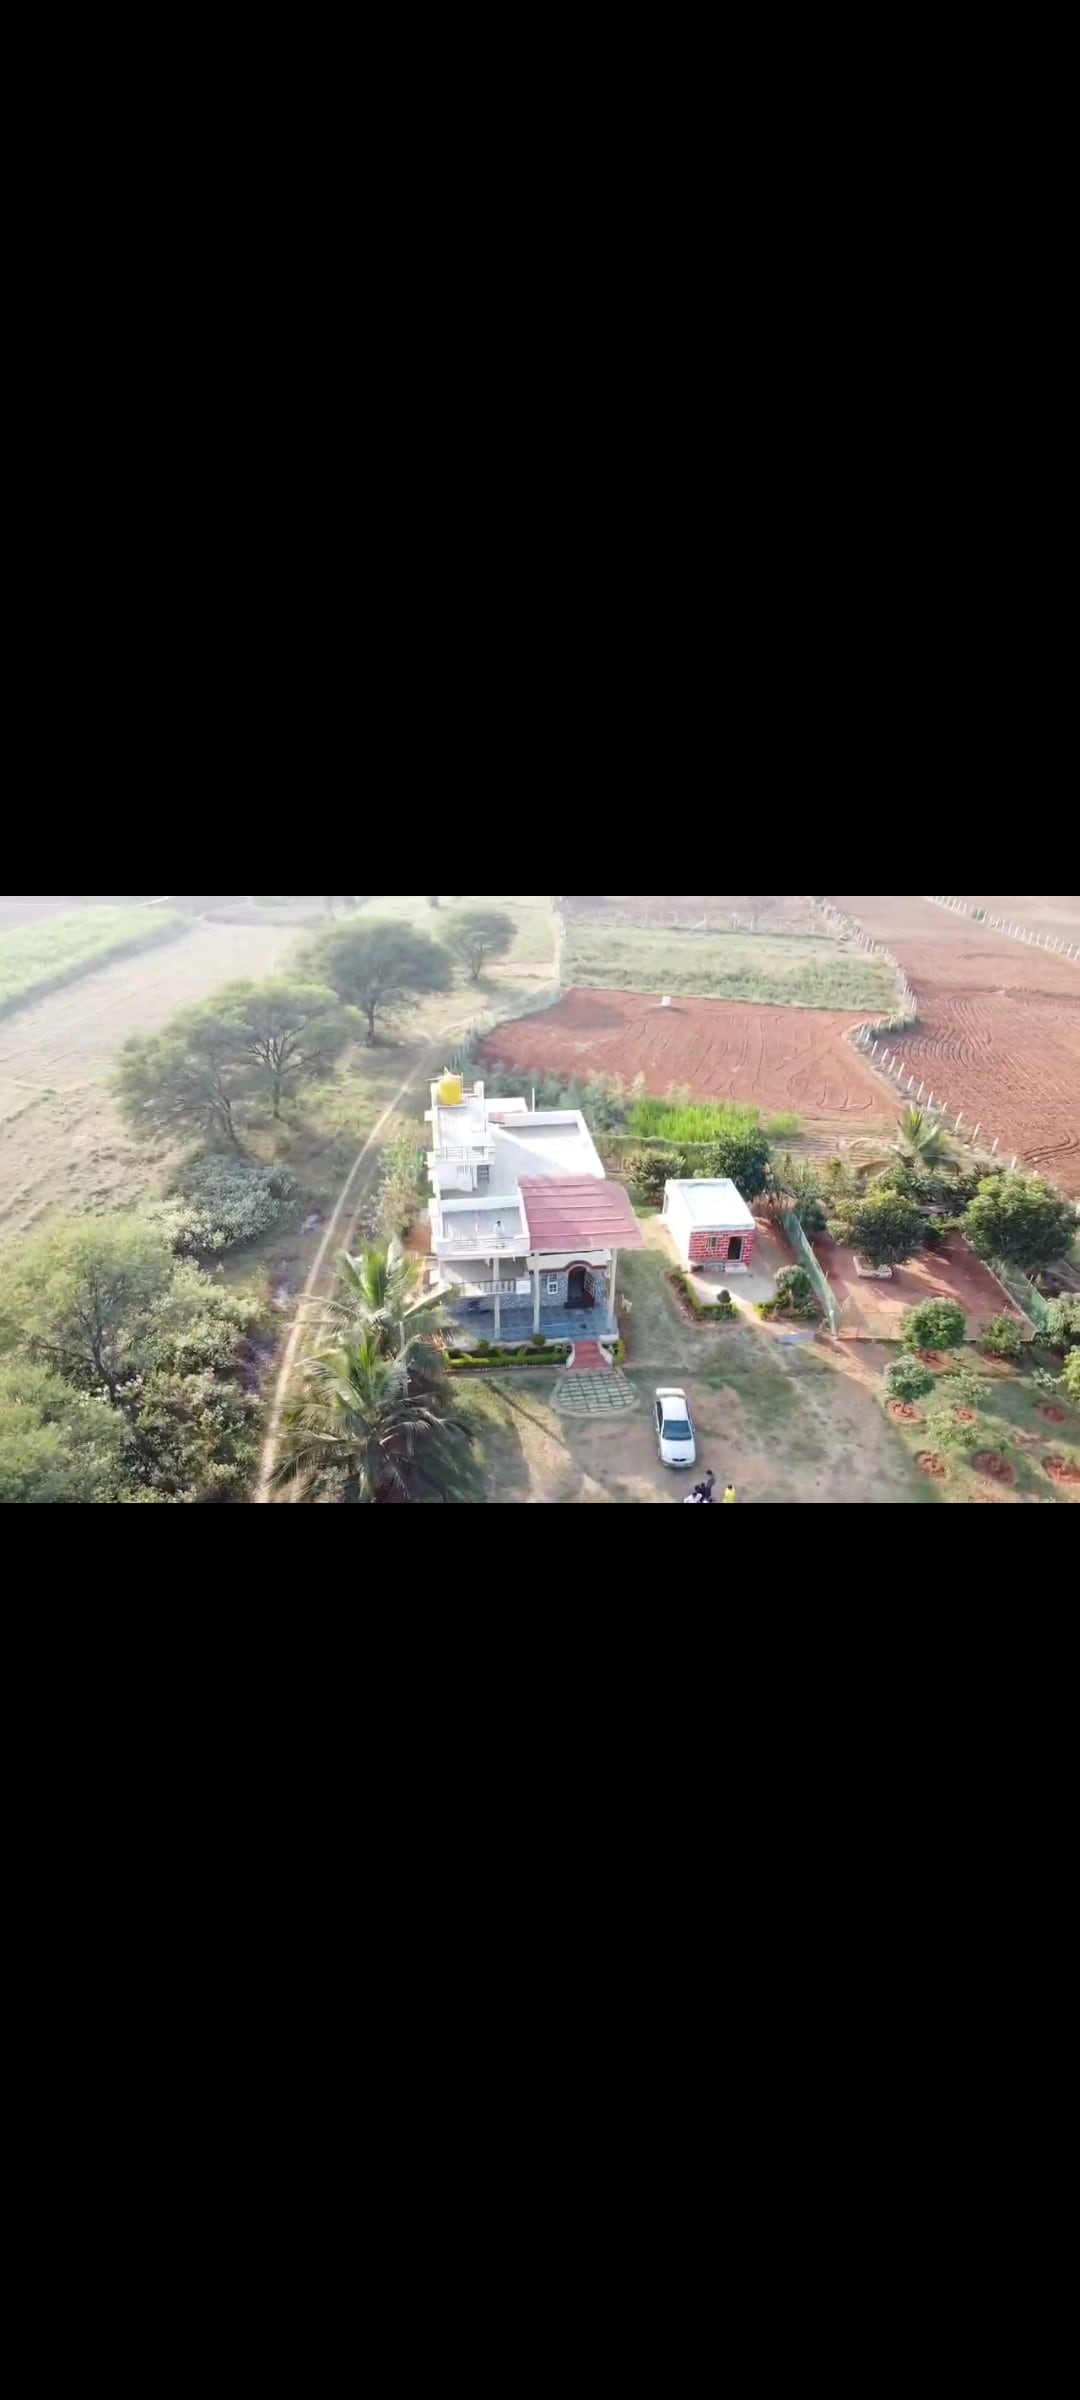 Raffu's Farmhouse